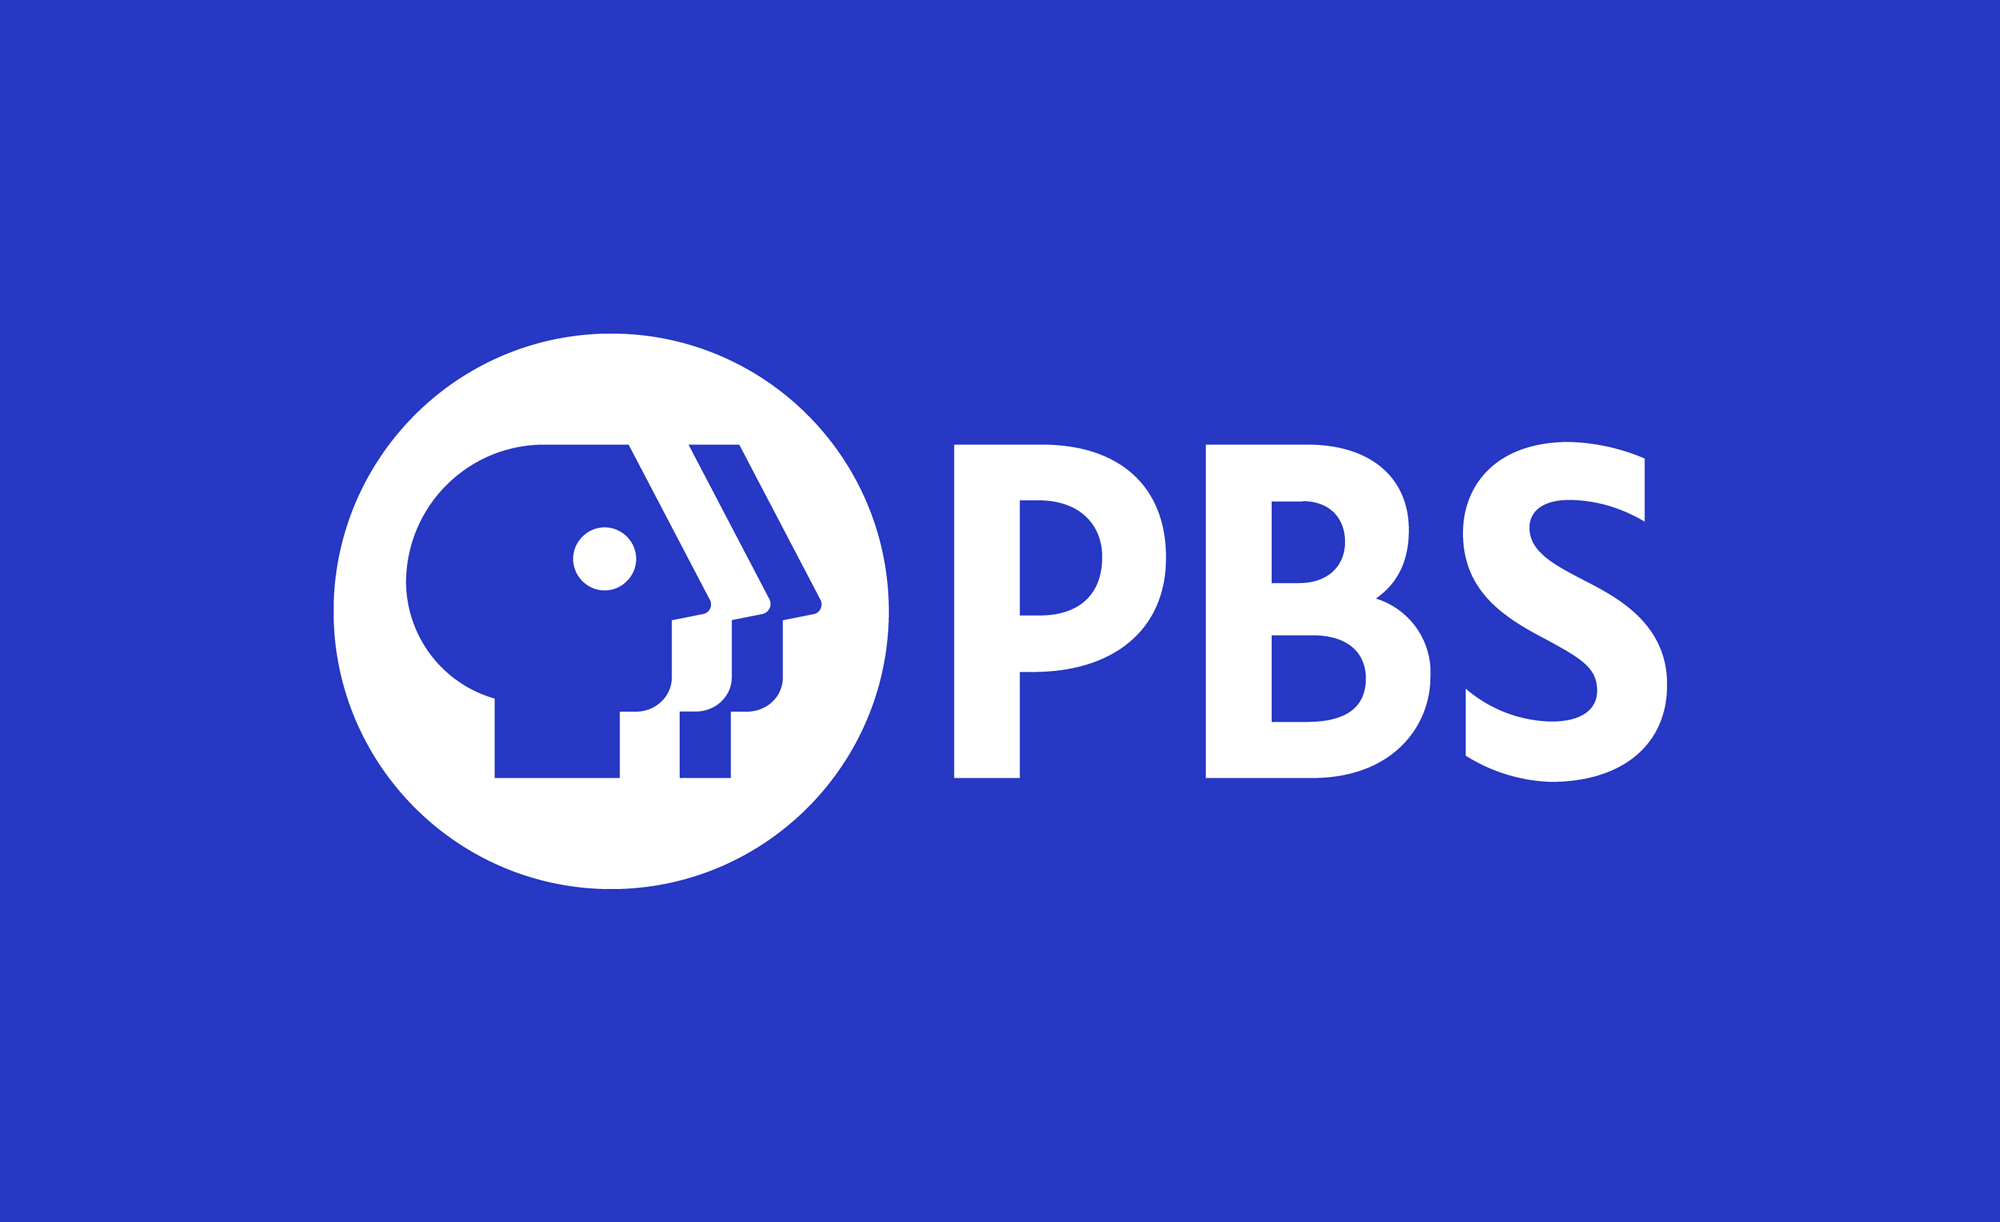 PBS SVG